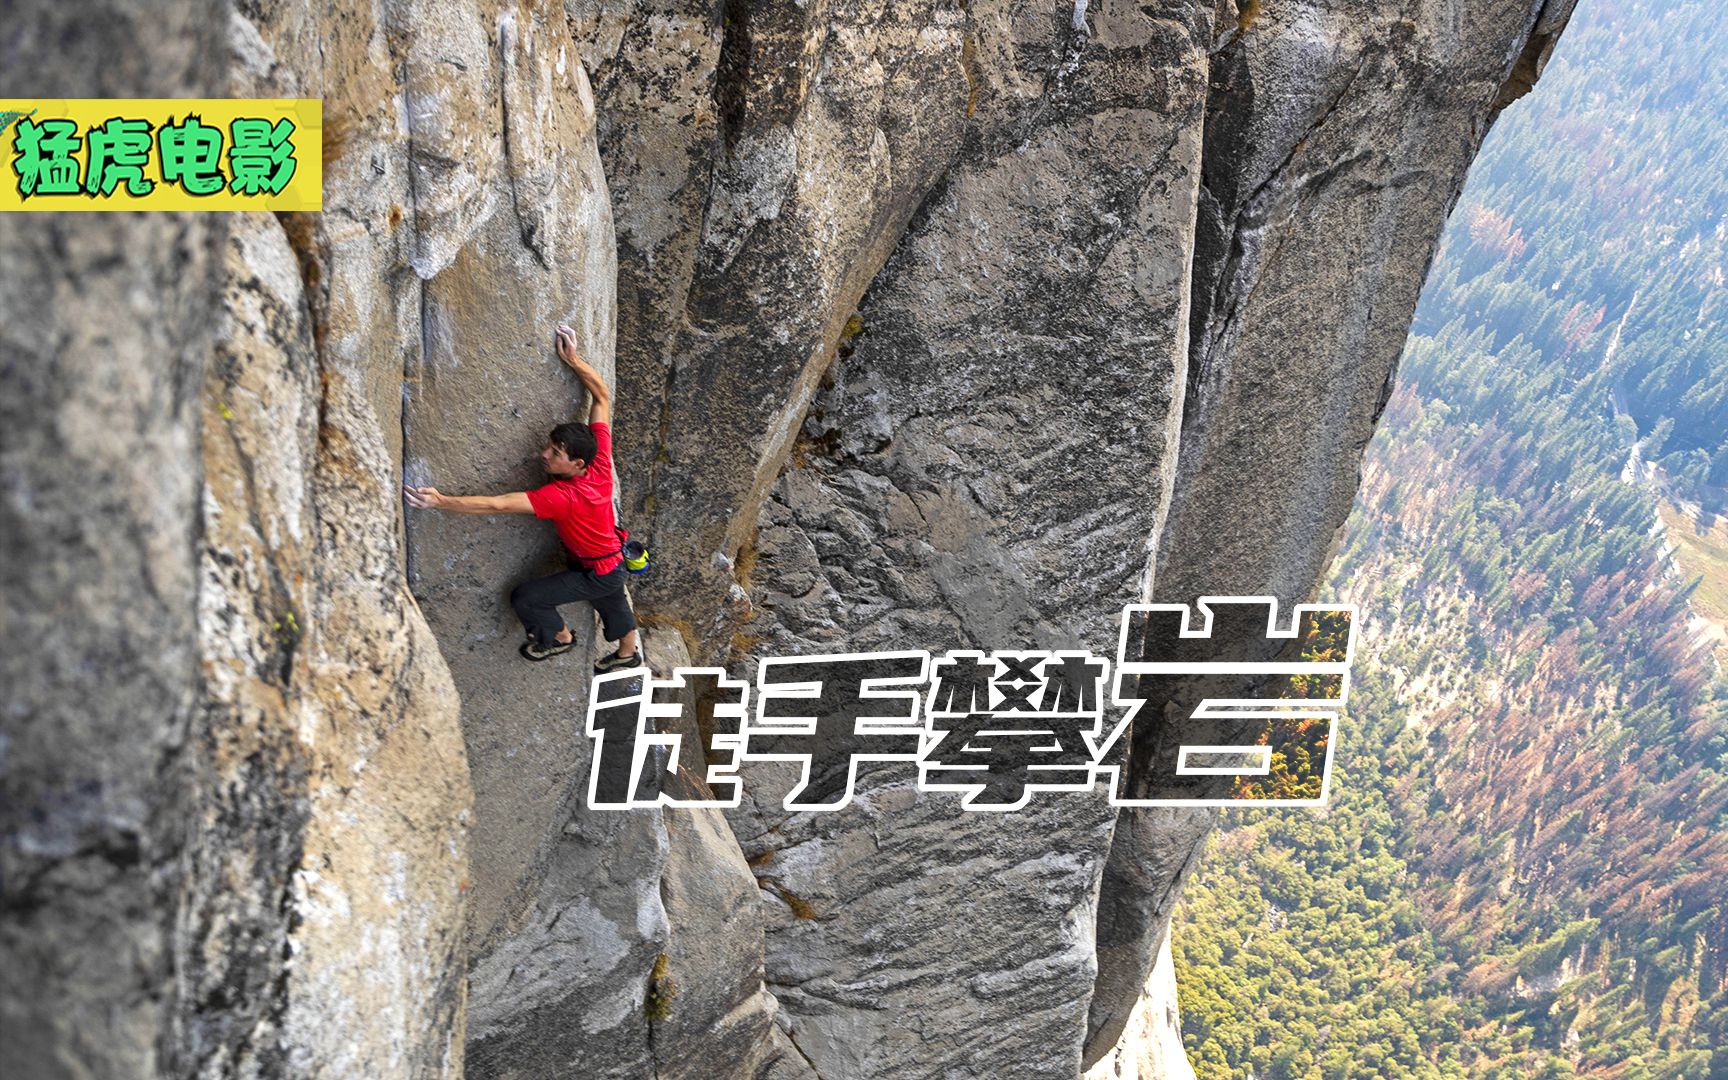 这是真实的拍摄镜头，无任何保护措施，徒手攀爬几百米的巨岩